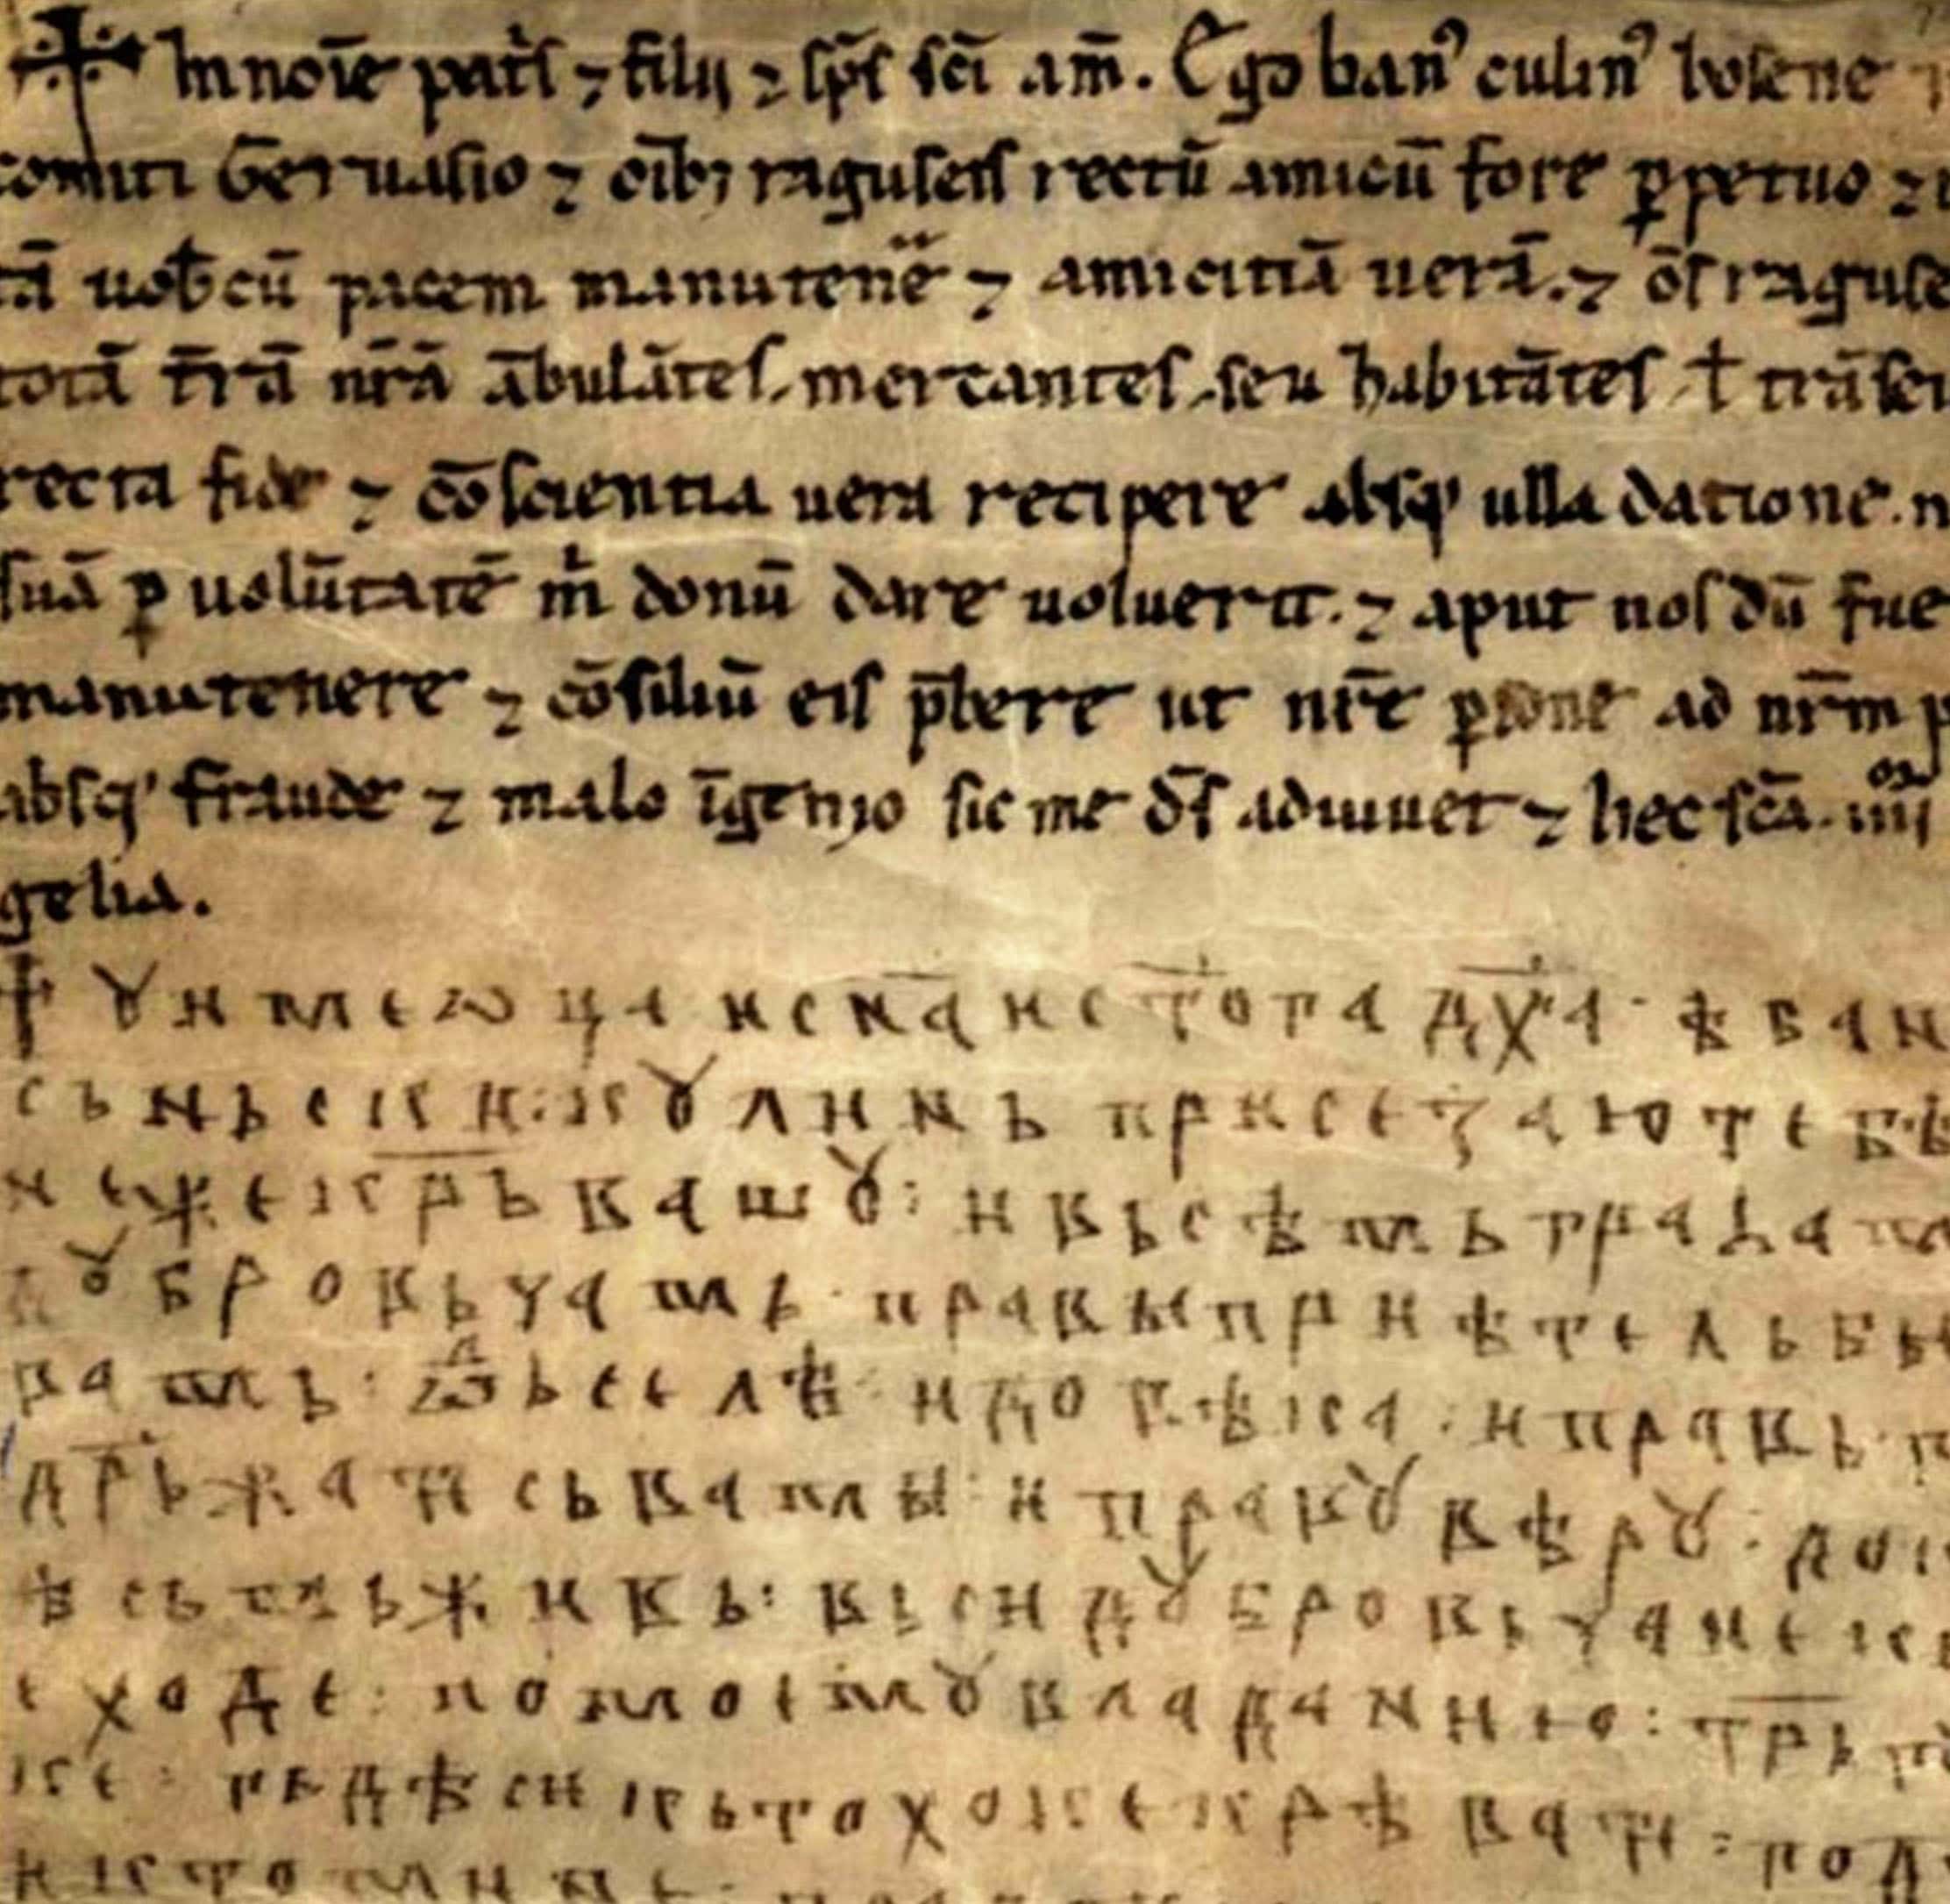 Charta von Kulin Ban, ein Handelsabkommen mit Dubrovnik von 1189